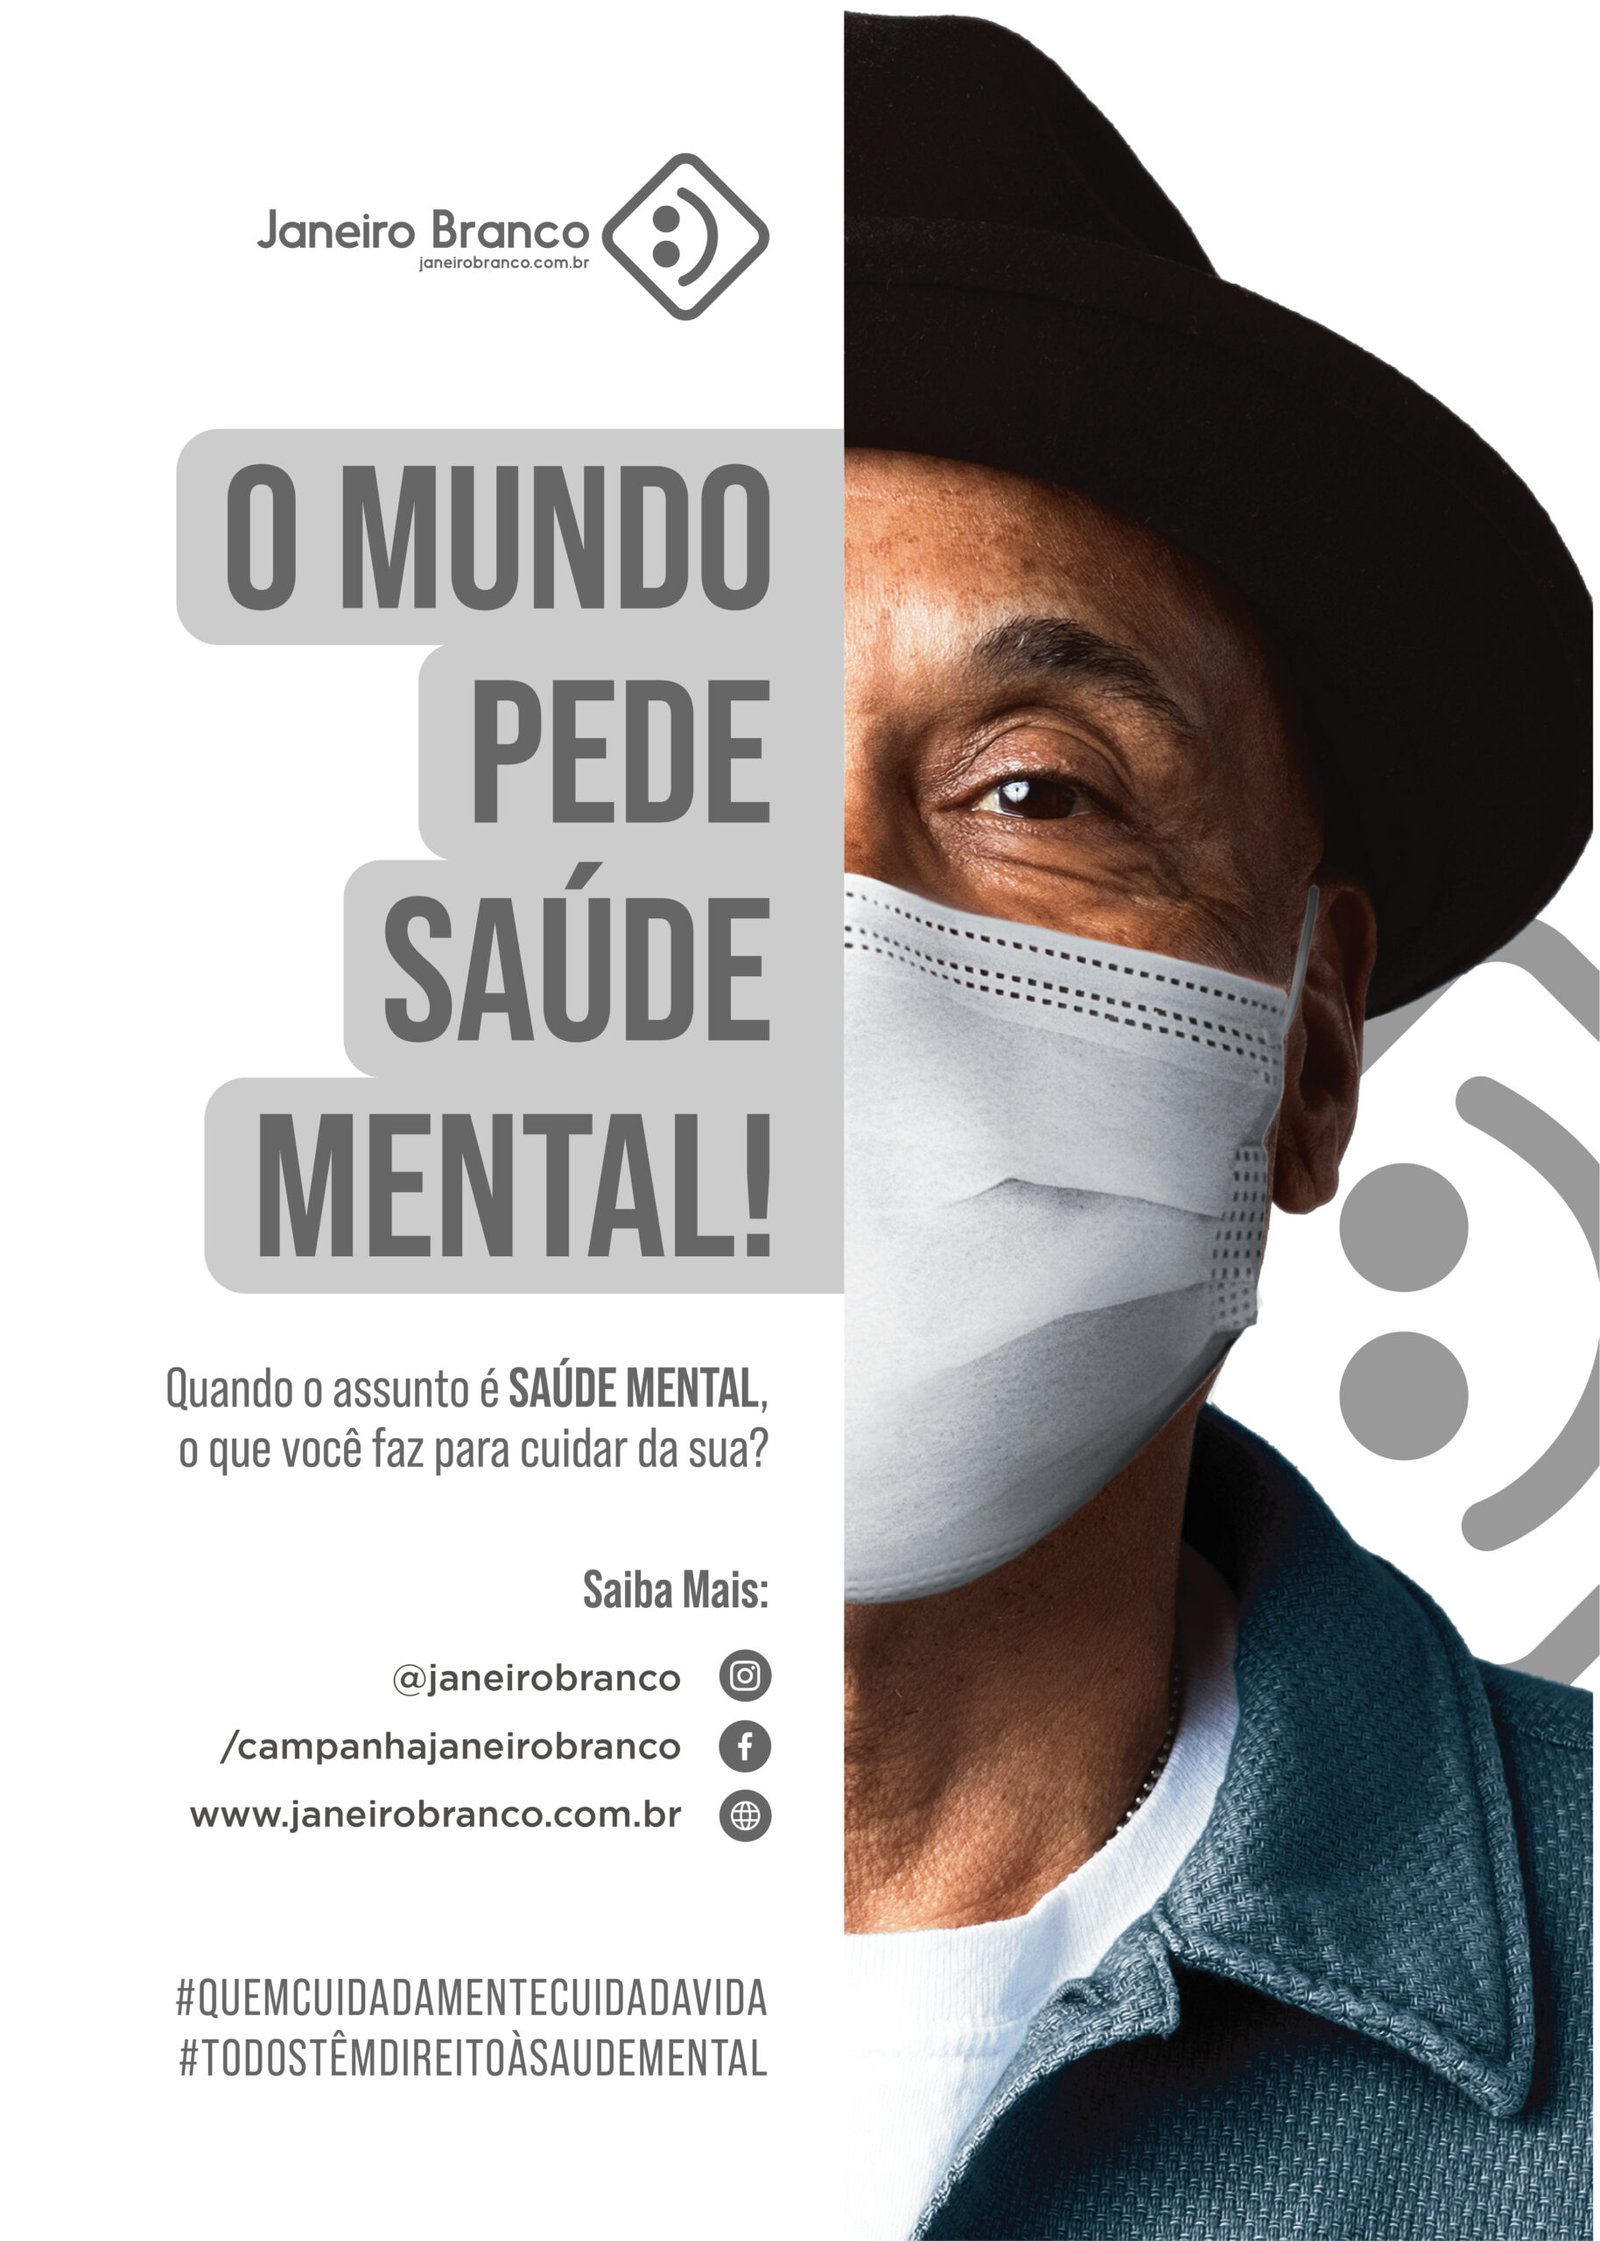 Semana de Campanha para a Saúde Mental e EXP em Dobro - Esta